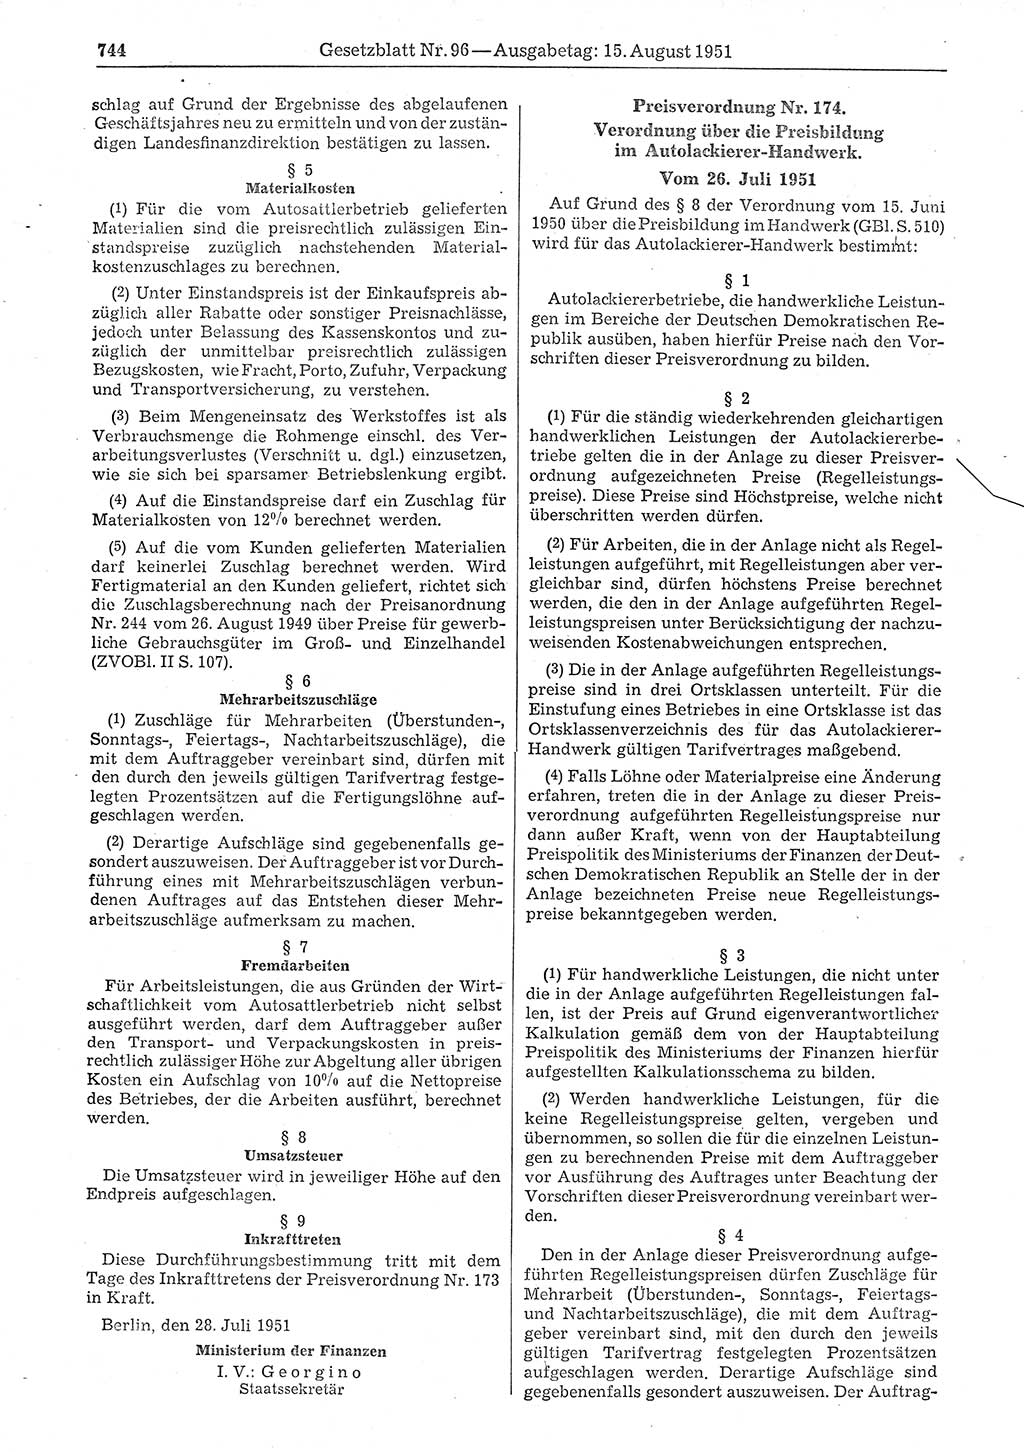 Gesetzblatt (GBl.) der Deutschen Demokratischen Republik (DDR) 1951, Seite 744 (GBl. DDR 1951, S. 744)